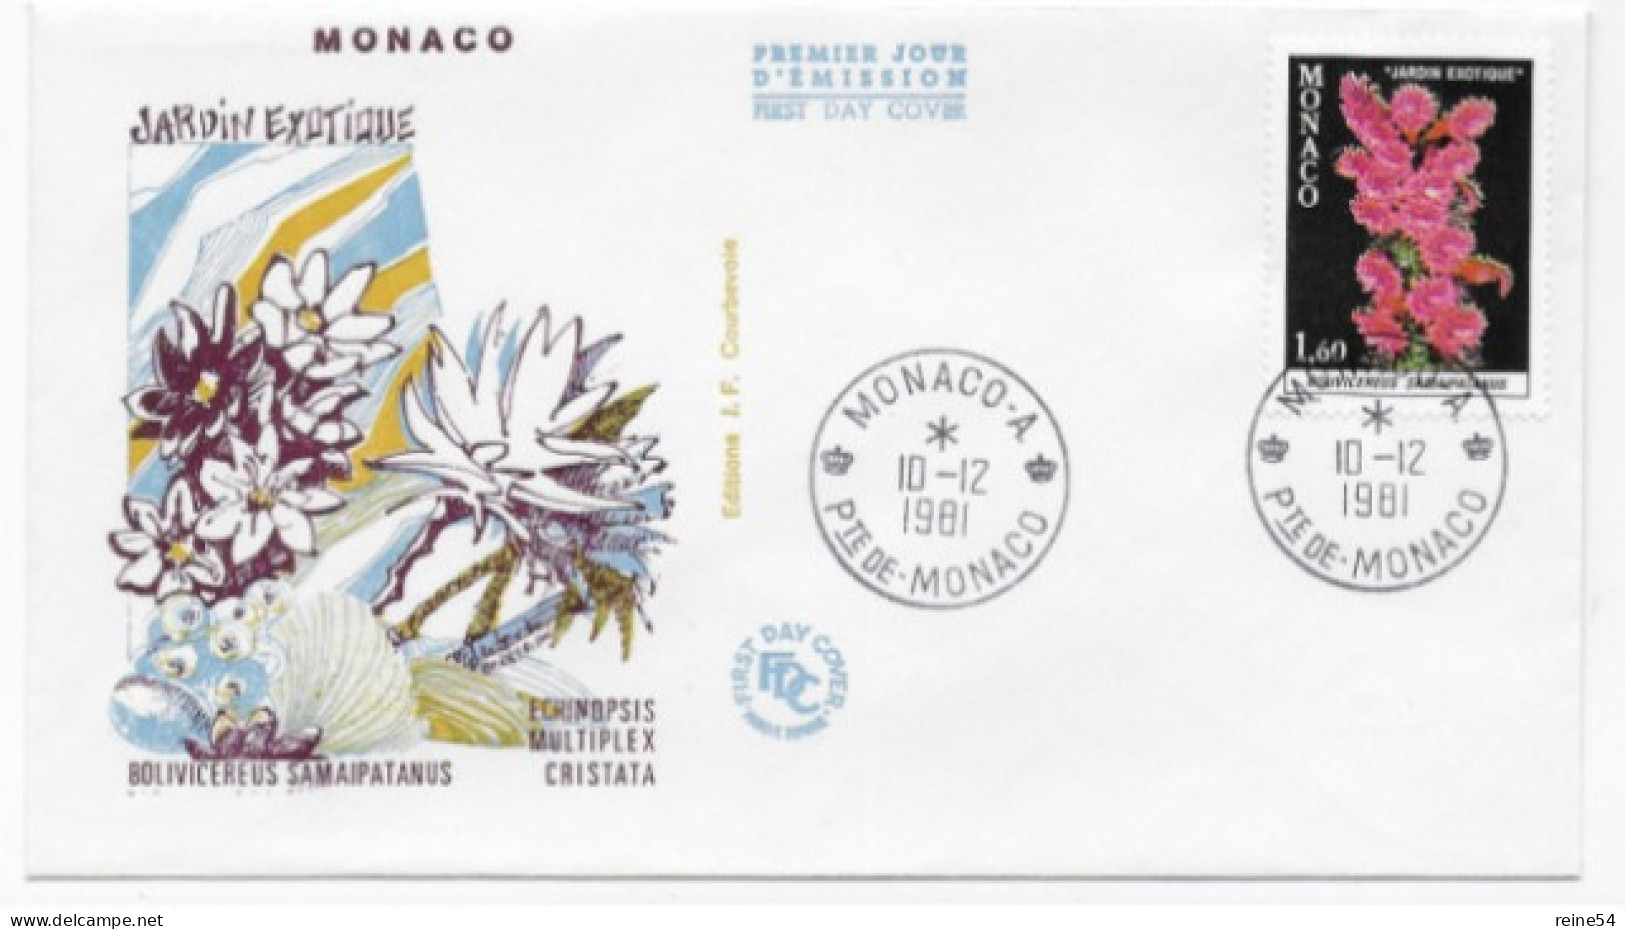 Enveloppe Premier Jour - Jardin Exotique -Bolivicereus Samaipatanus 10-12-1981 Pte De Monaco (fleurs) - Used Stamps